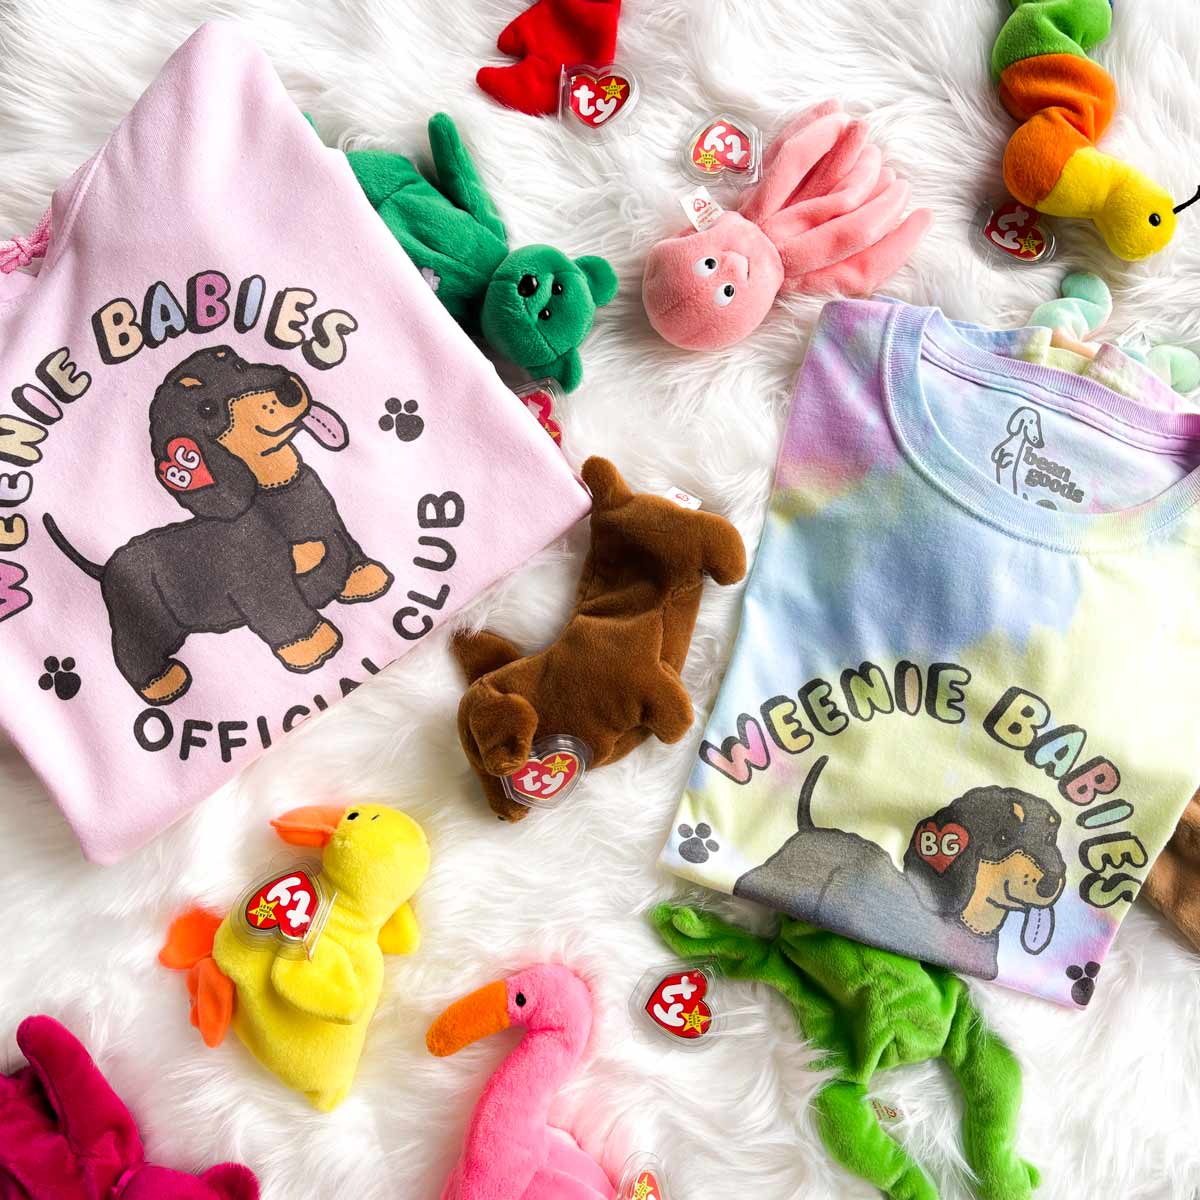 weenie babies unisex hoodie | pink - BeanGoods